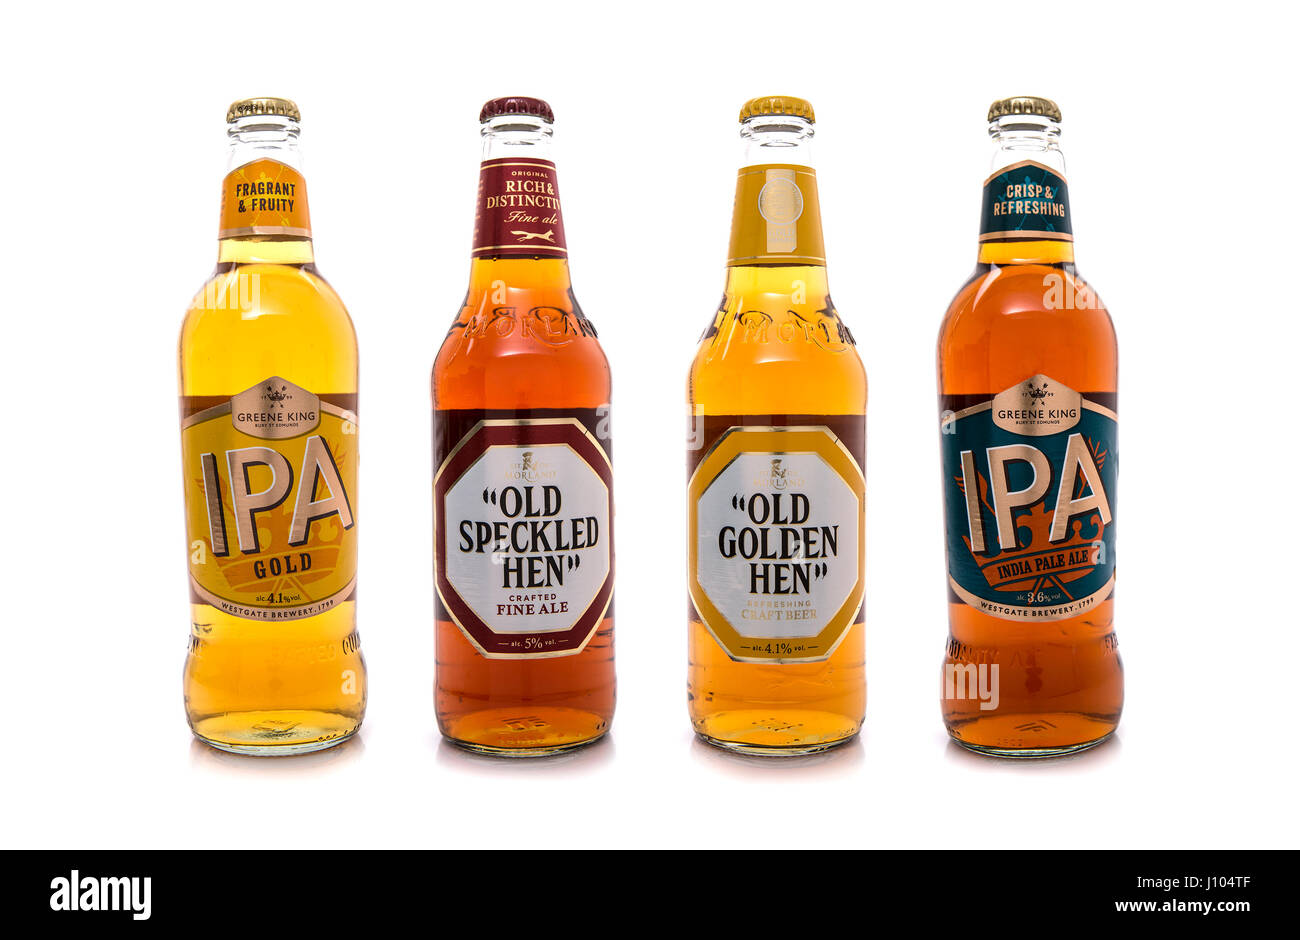 SWINDON, Royaume-Uni - 06 avril 2017 : Chef de sélection des brasseurs bières de Greene King, 4 bouteilles de bières anglaises les plus choisis par le chef brasseur. Banque D'Images